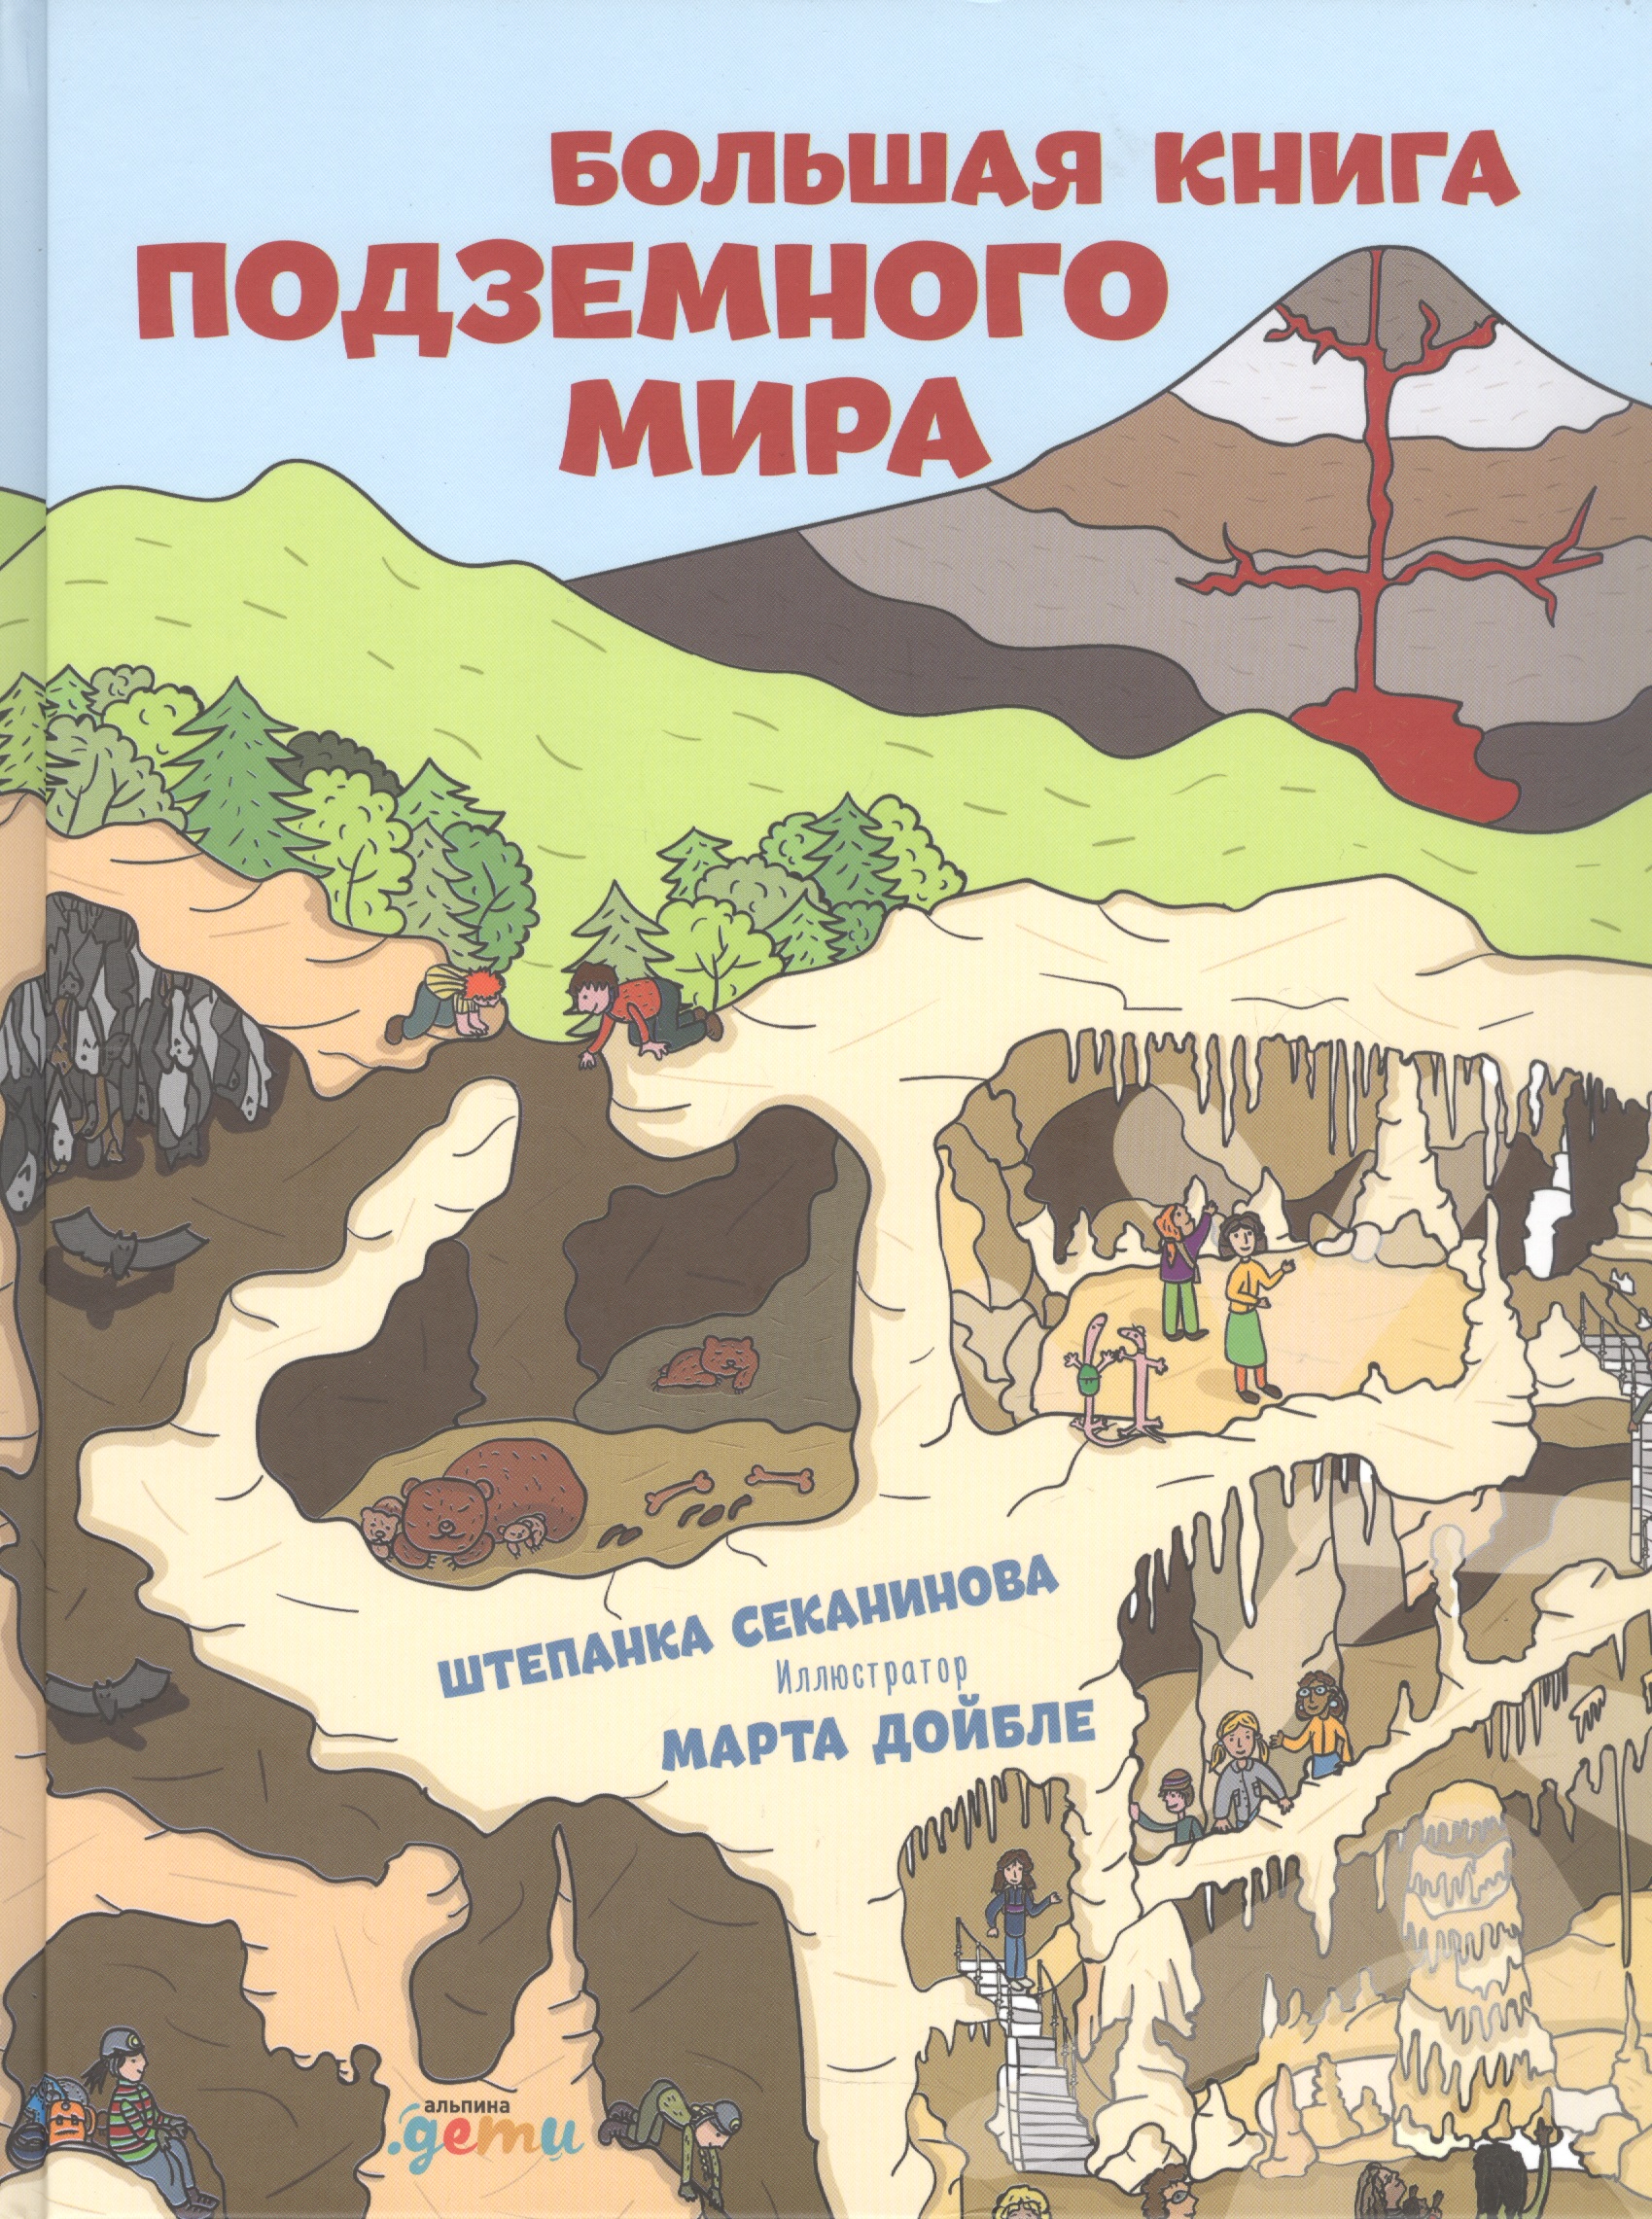 Большая книга подземного мира. Для детей 7-12 лет секанинова штепанка дойбле марта большая книга подземного мира